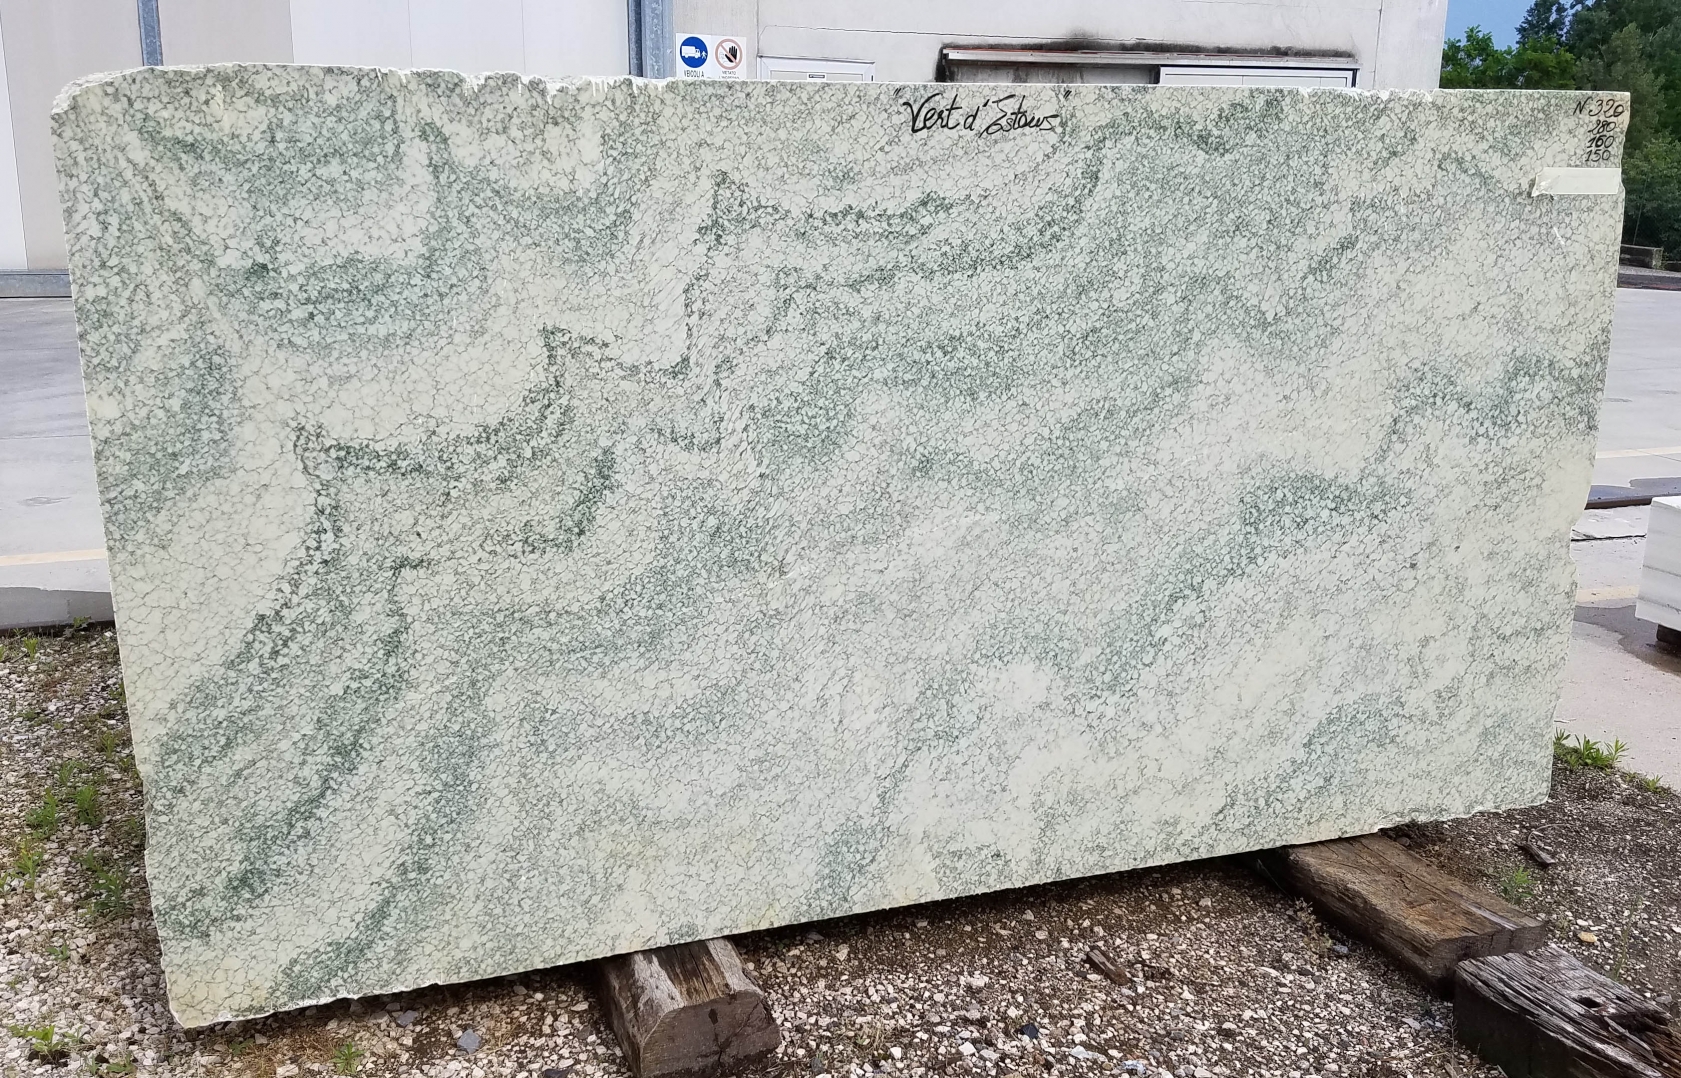 Vert d’Estours Fornitura Veneto (Italia) di blocchi grezzi in marmo naturale N320 , Face B 